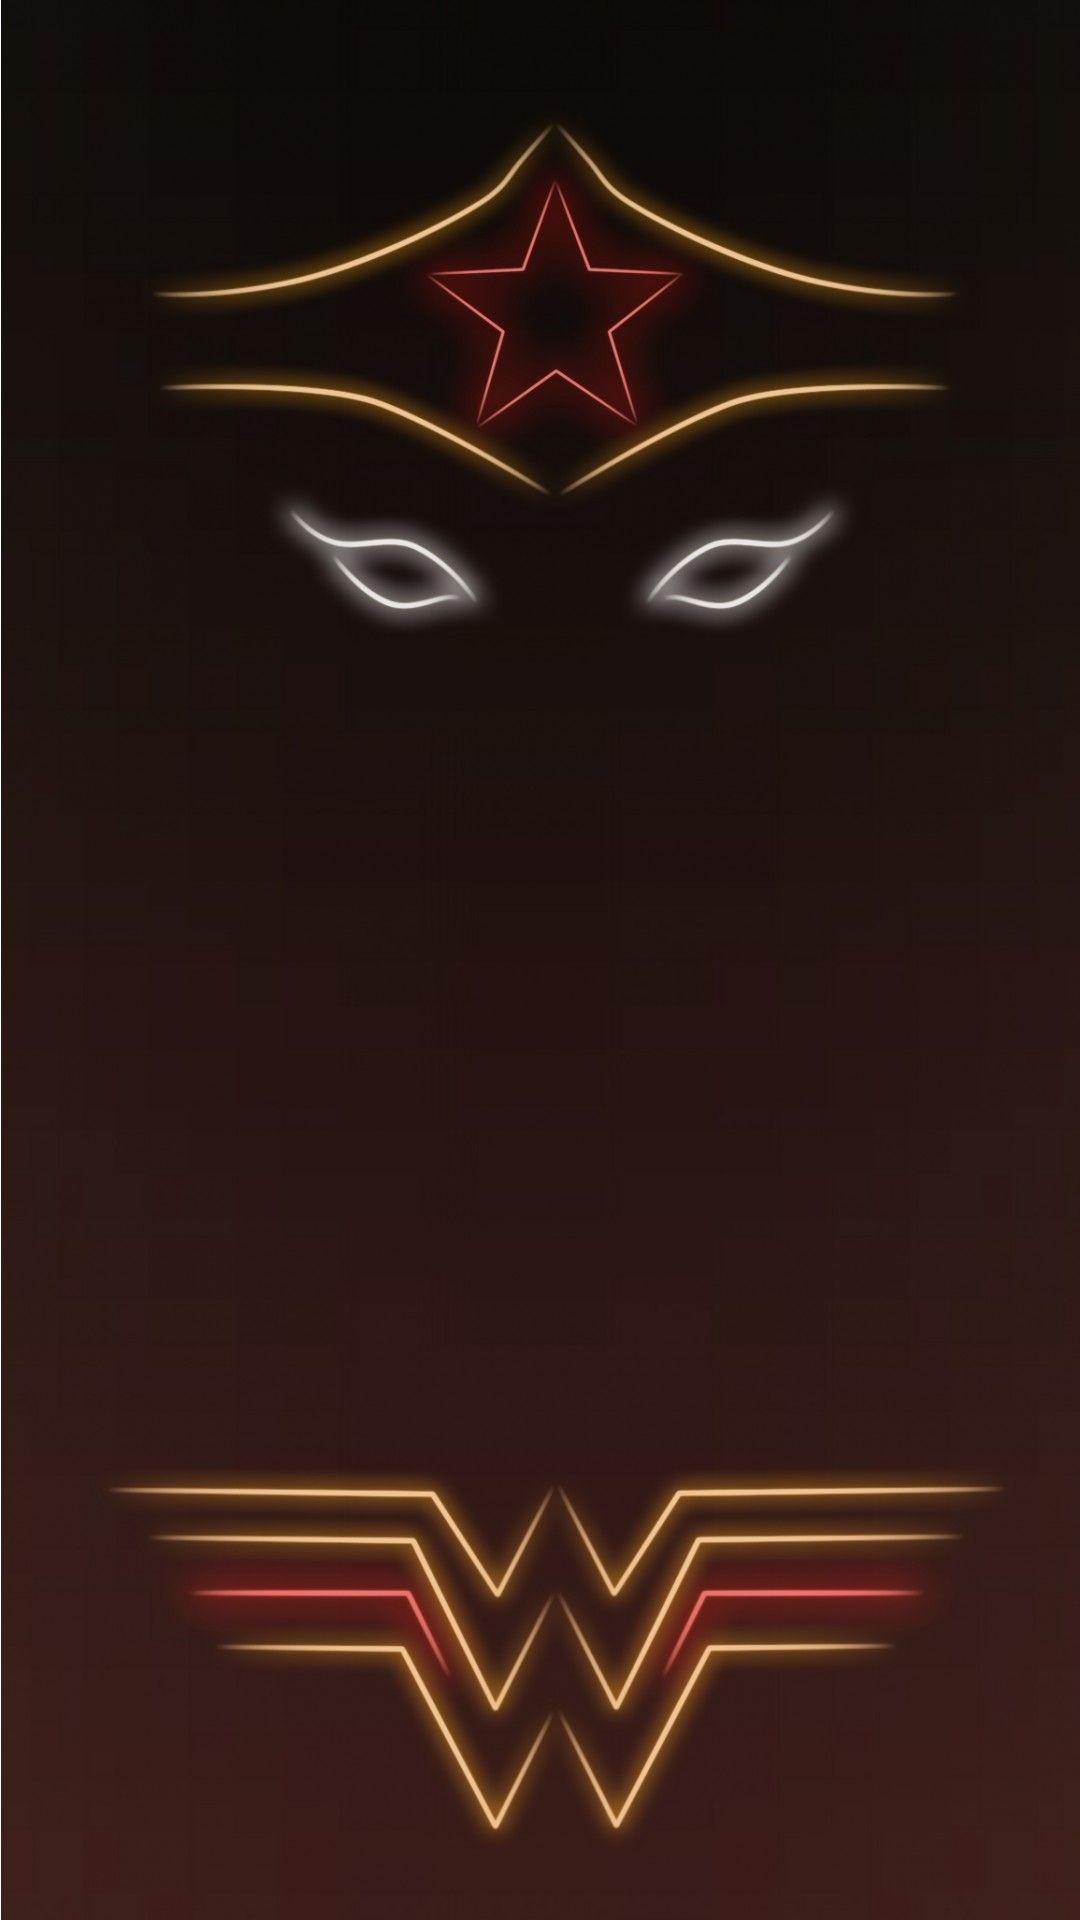 1080x1920 Wonder Woman Nhấn để xem thêm các siêu anh hùng phát sáng với quả táo đèn neon